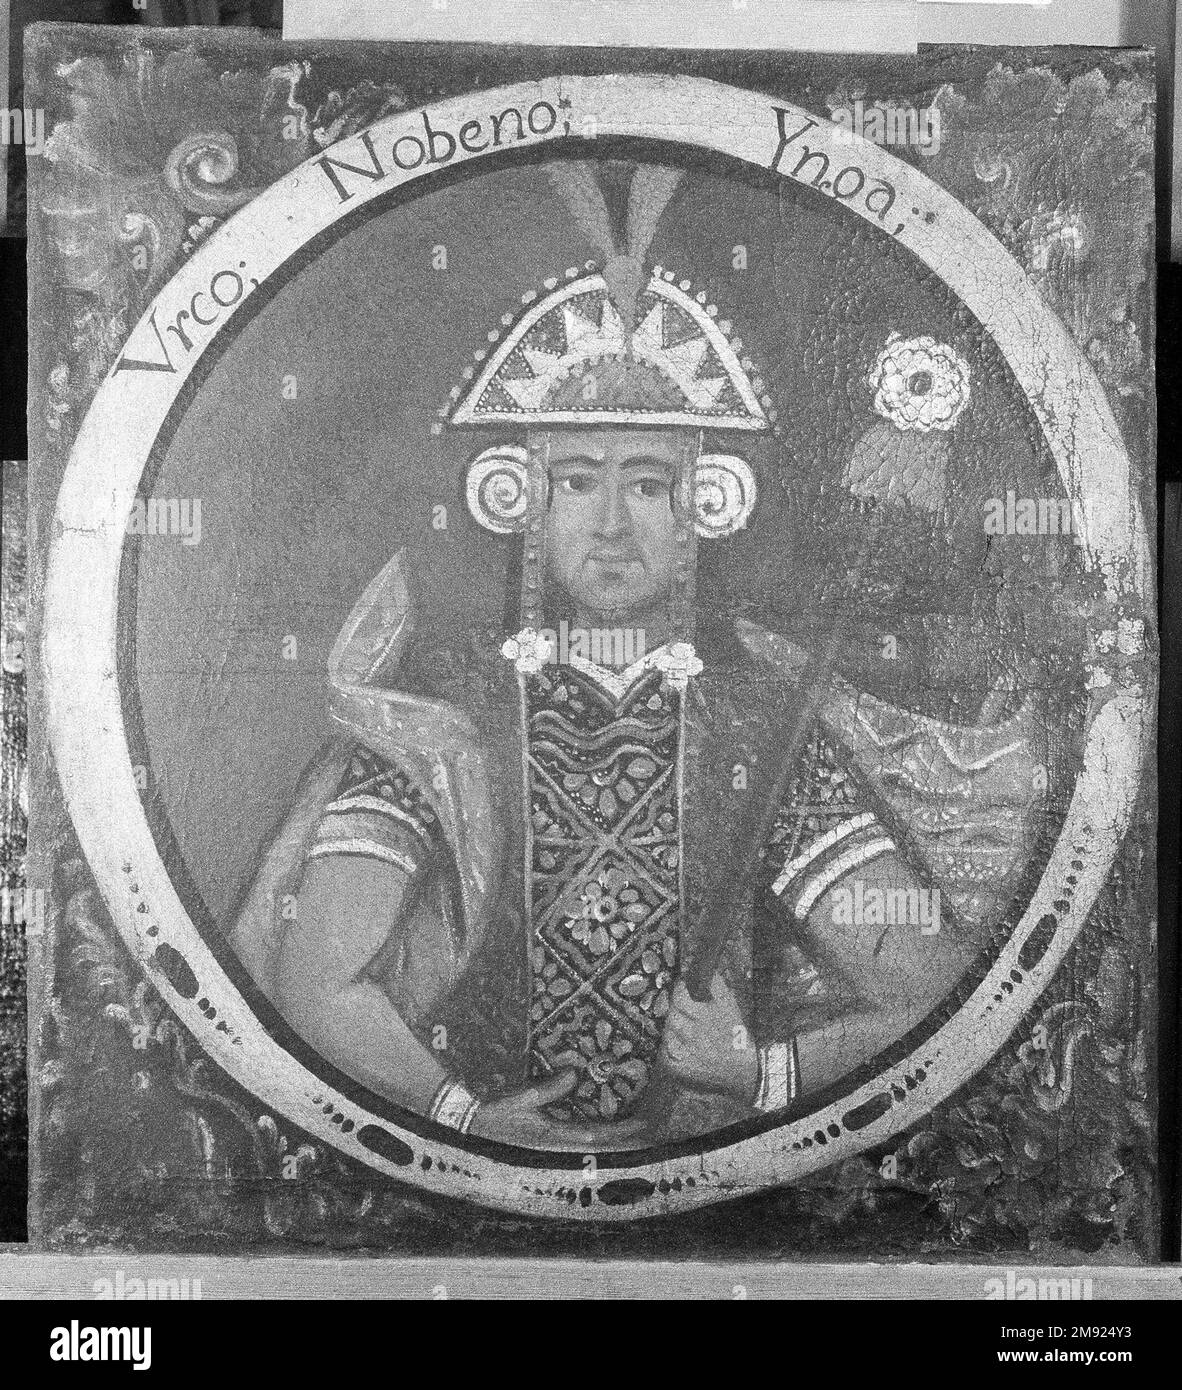 Urco, Neunte Inka, 1 von 14 Porträts von Inka Kings Unknown. Urco, Neunte Inka, 1 von 14 Porträts von Inka-Königen, Mitte des 18. Jahrhunderts (wahrscheinlich). Öl auf Segeltuch, 23 7/16 x 21 9/16in. (59,5 x 54,8cm). Der blaue Hintergrund dieser zwölf Porträts von Inka-Königen hätte mit einer Vielzahl von Pigmenten hergestellt werden können, die in der Viceroyalty von Peru im 18. Jahrhundert verfügbar waren: Preußischblau aus Deutschland, Indigo aus Amerika und Salt, Aus Europa importiert. In der Viceroyalty von Peru war die Wahl eines blauen Hintergrunds für diese Porträts strategisch, wodurch die Motive so blau wie ich wurden Stockfoto